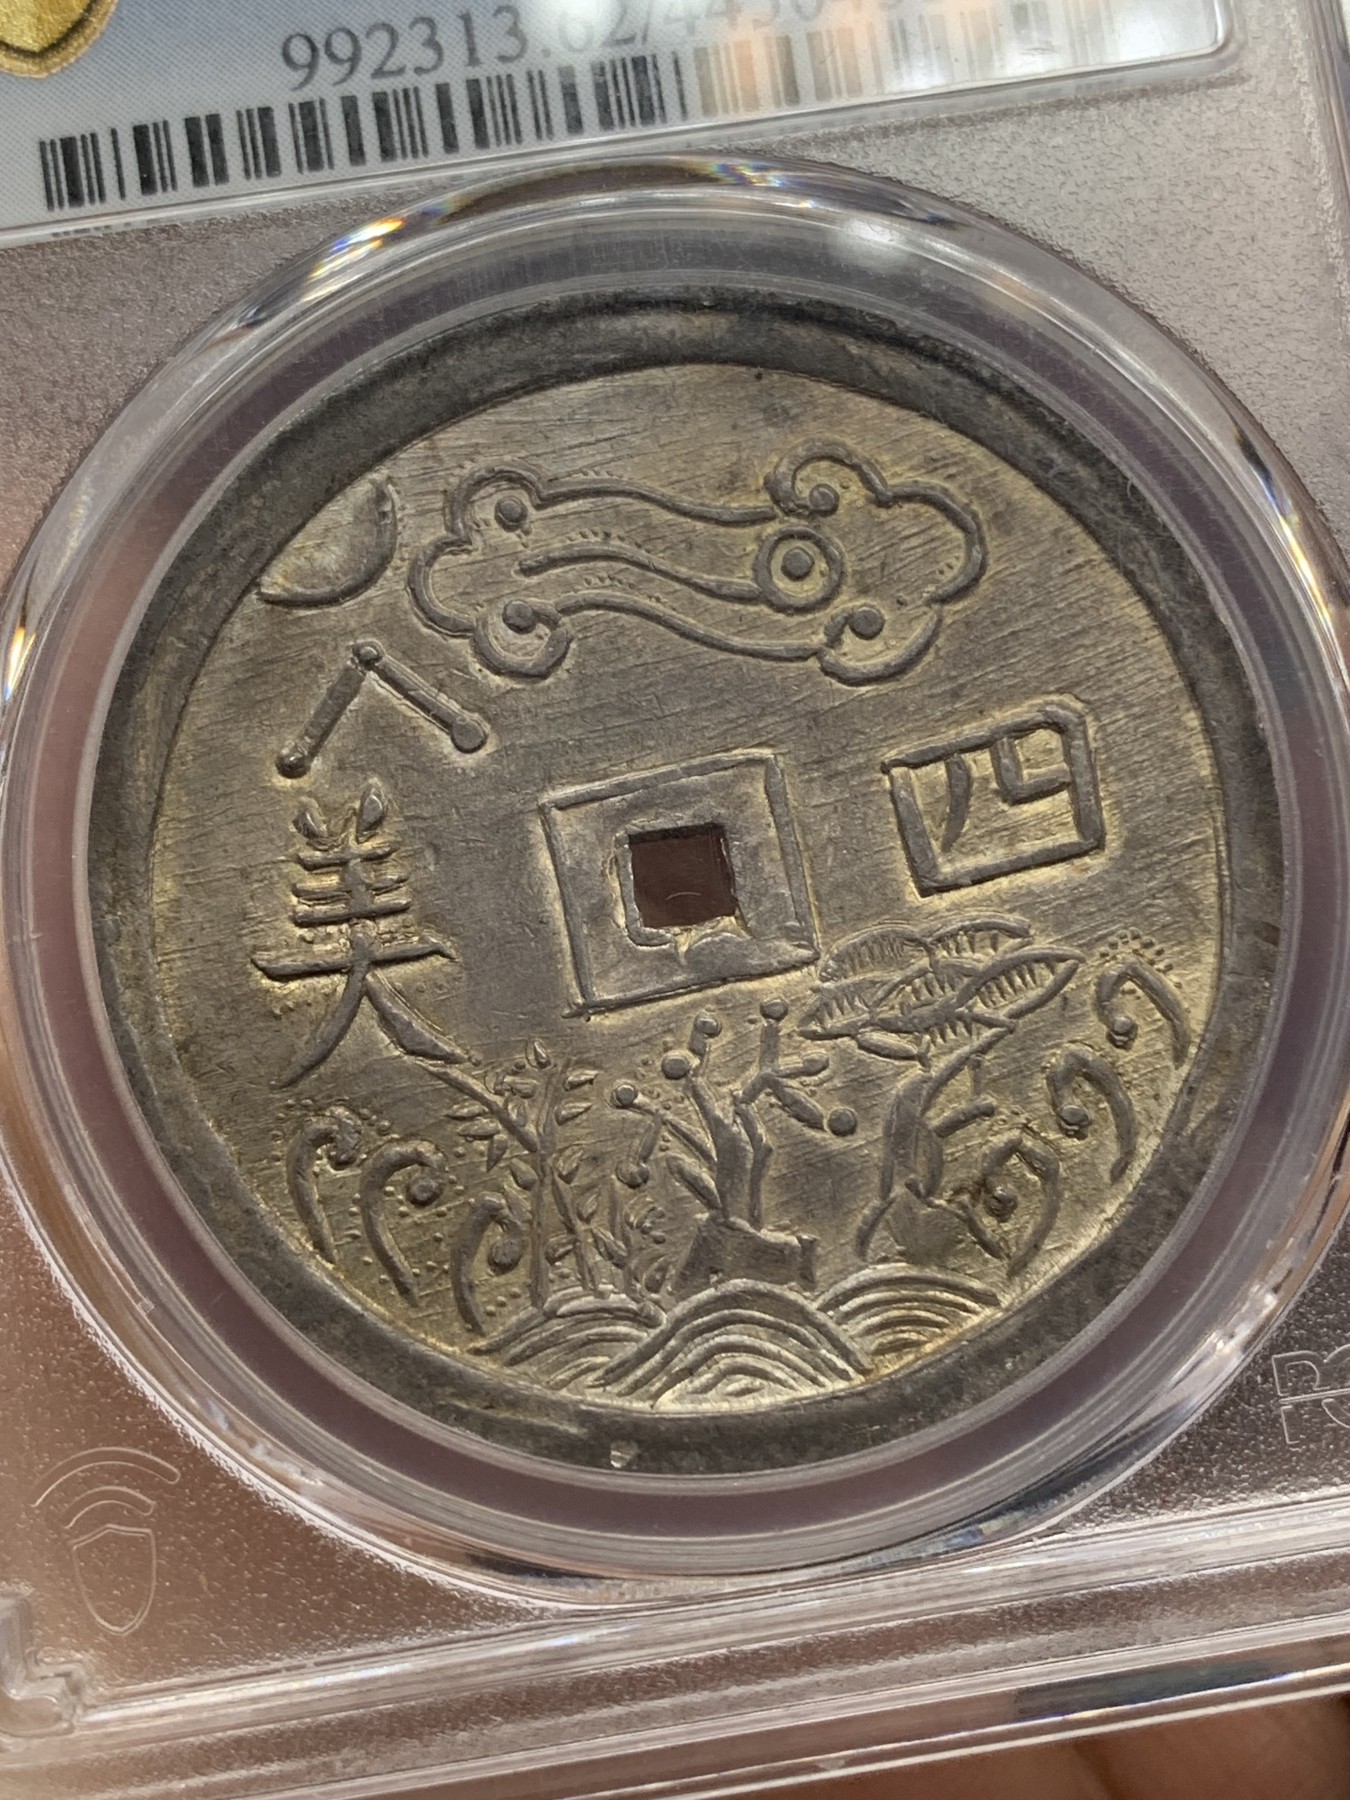 亚军分 PCGS MS62 安南 1848-83 嗣徳通宝 四美方孔银钱 深包浆带点金 藏家品质 正反全深打 画面居中 这些都是安南钱币里难得的状态